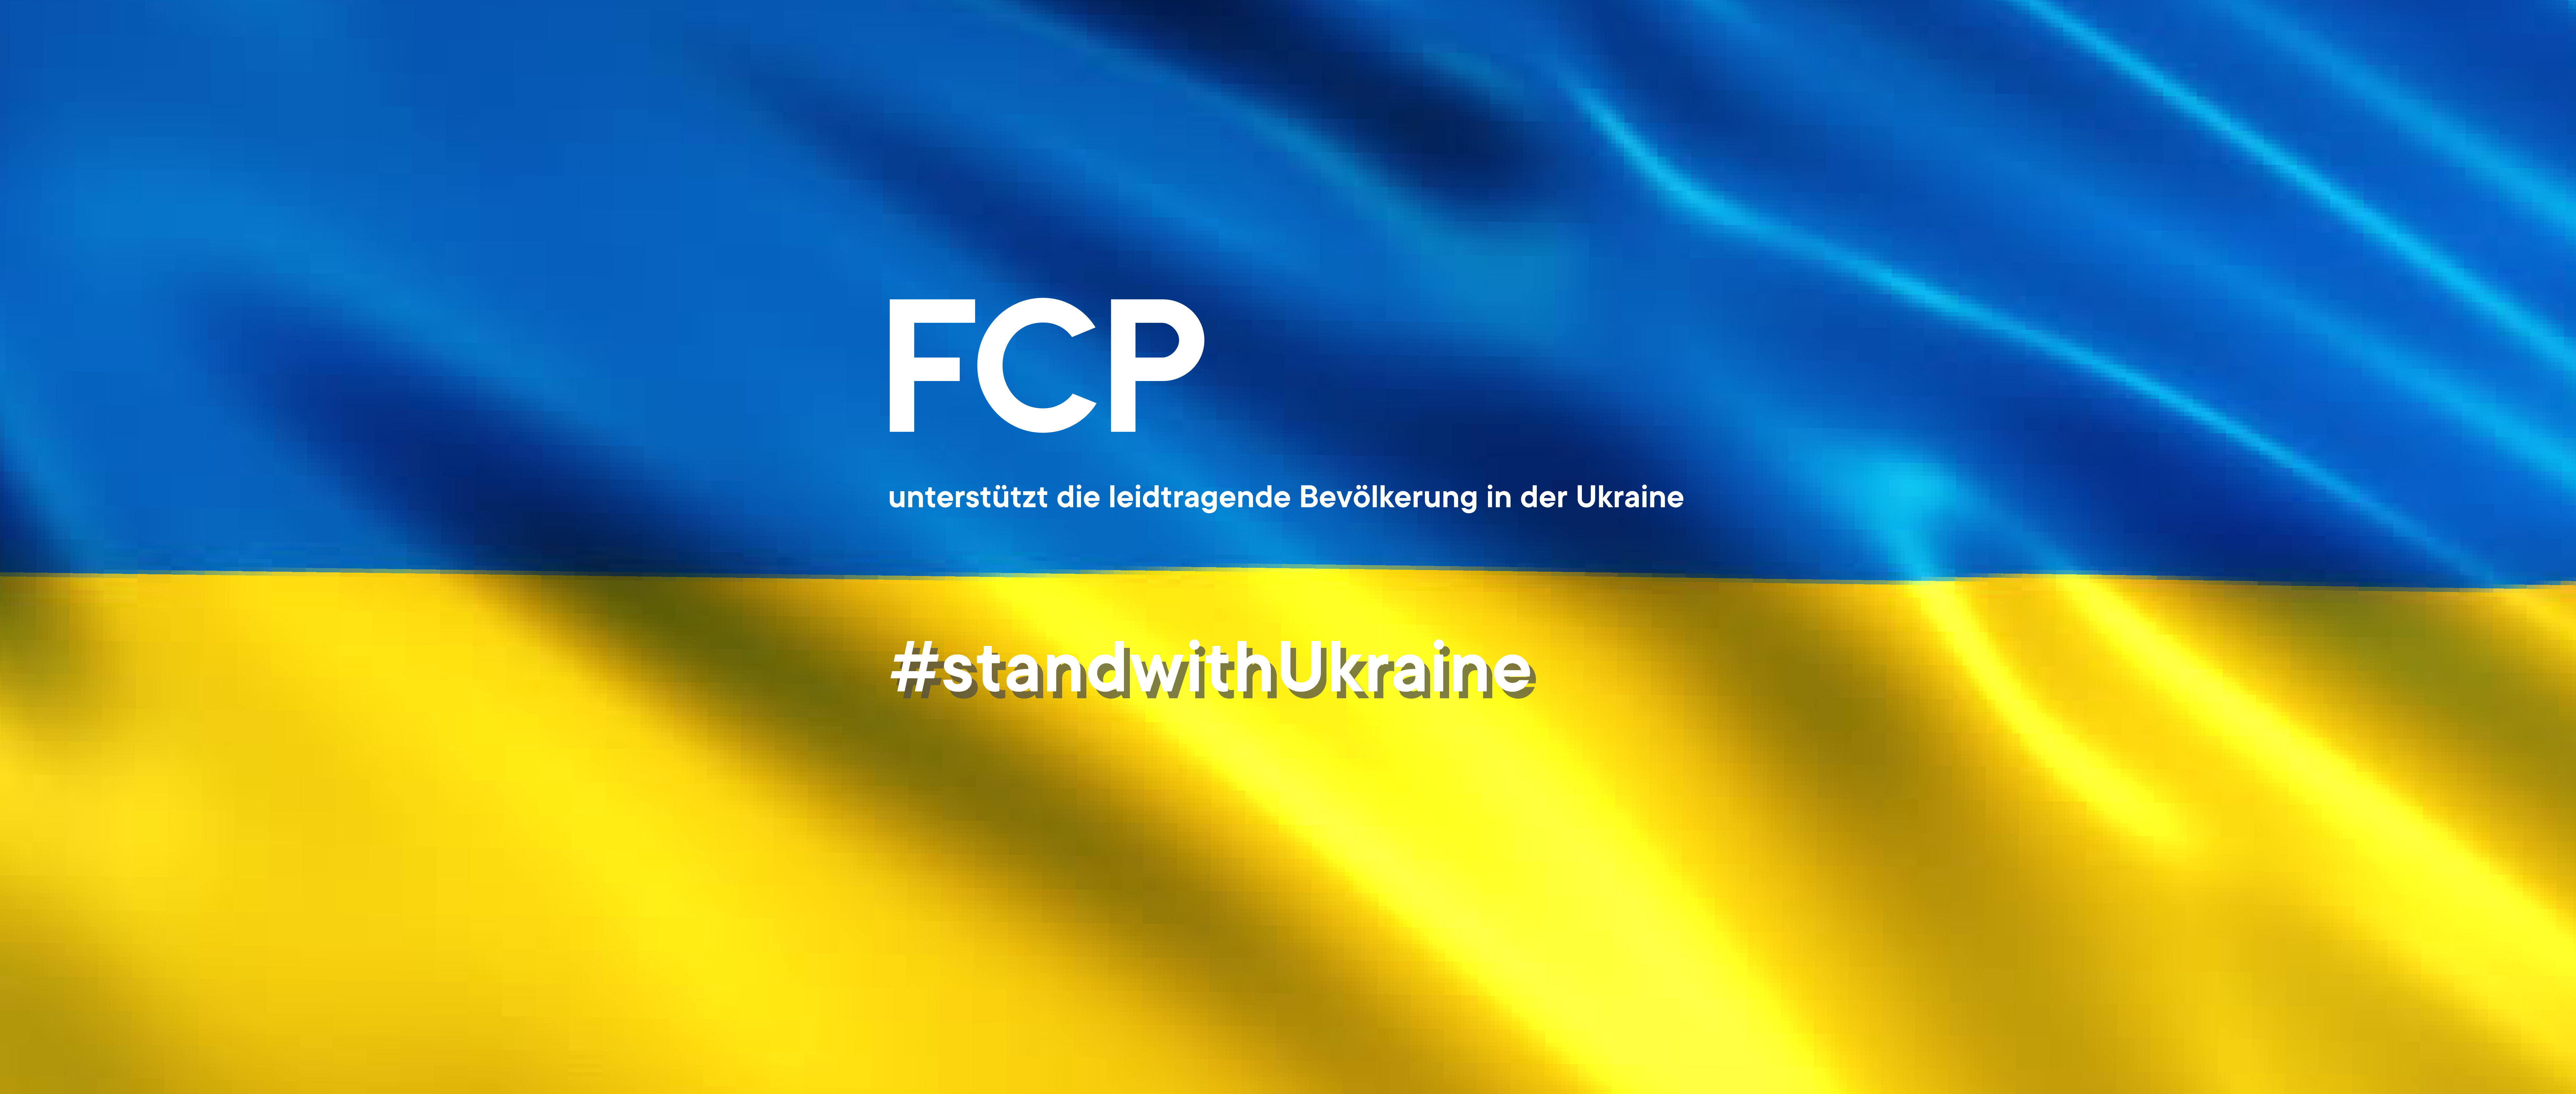 FCP unterstützt die leidtragende Bevölkerung der Ukraine